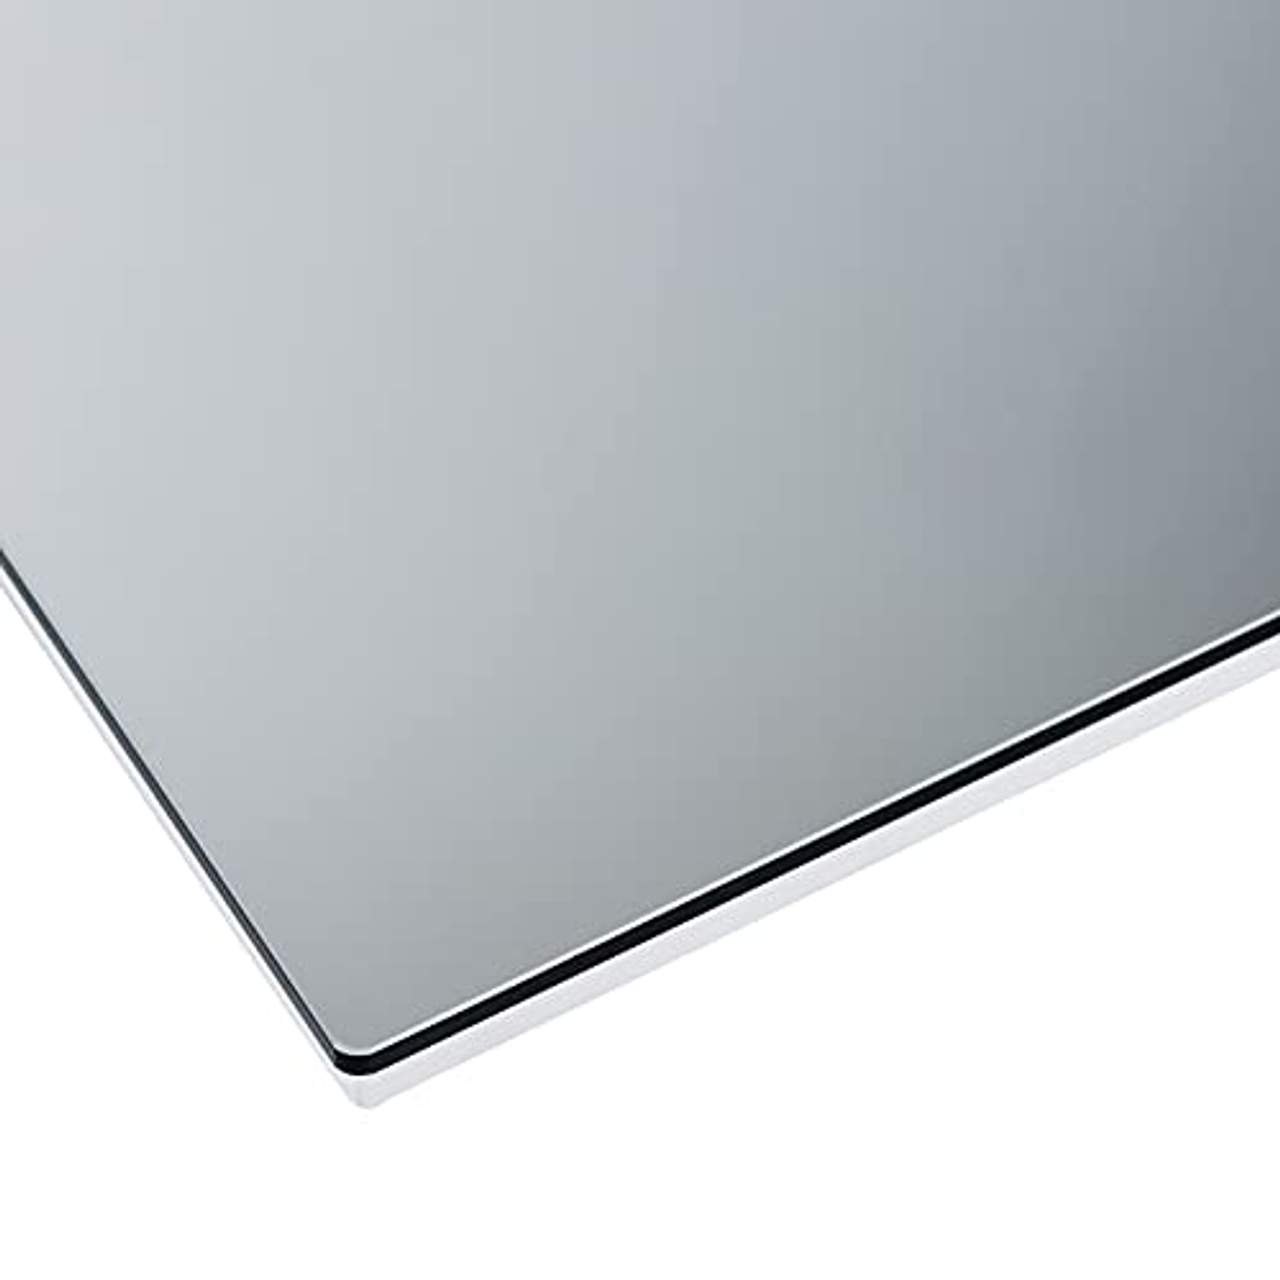 Mi-Heat Sundirect MD300-Plus Badezimmer Infrarot Heizspiegel 60x60cm